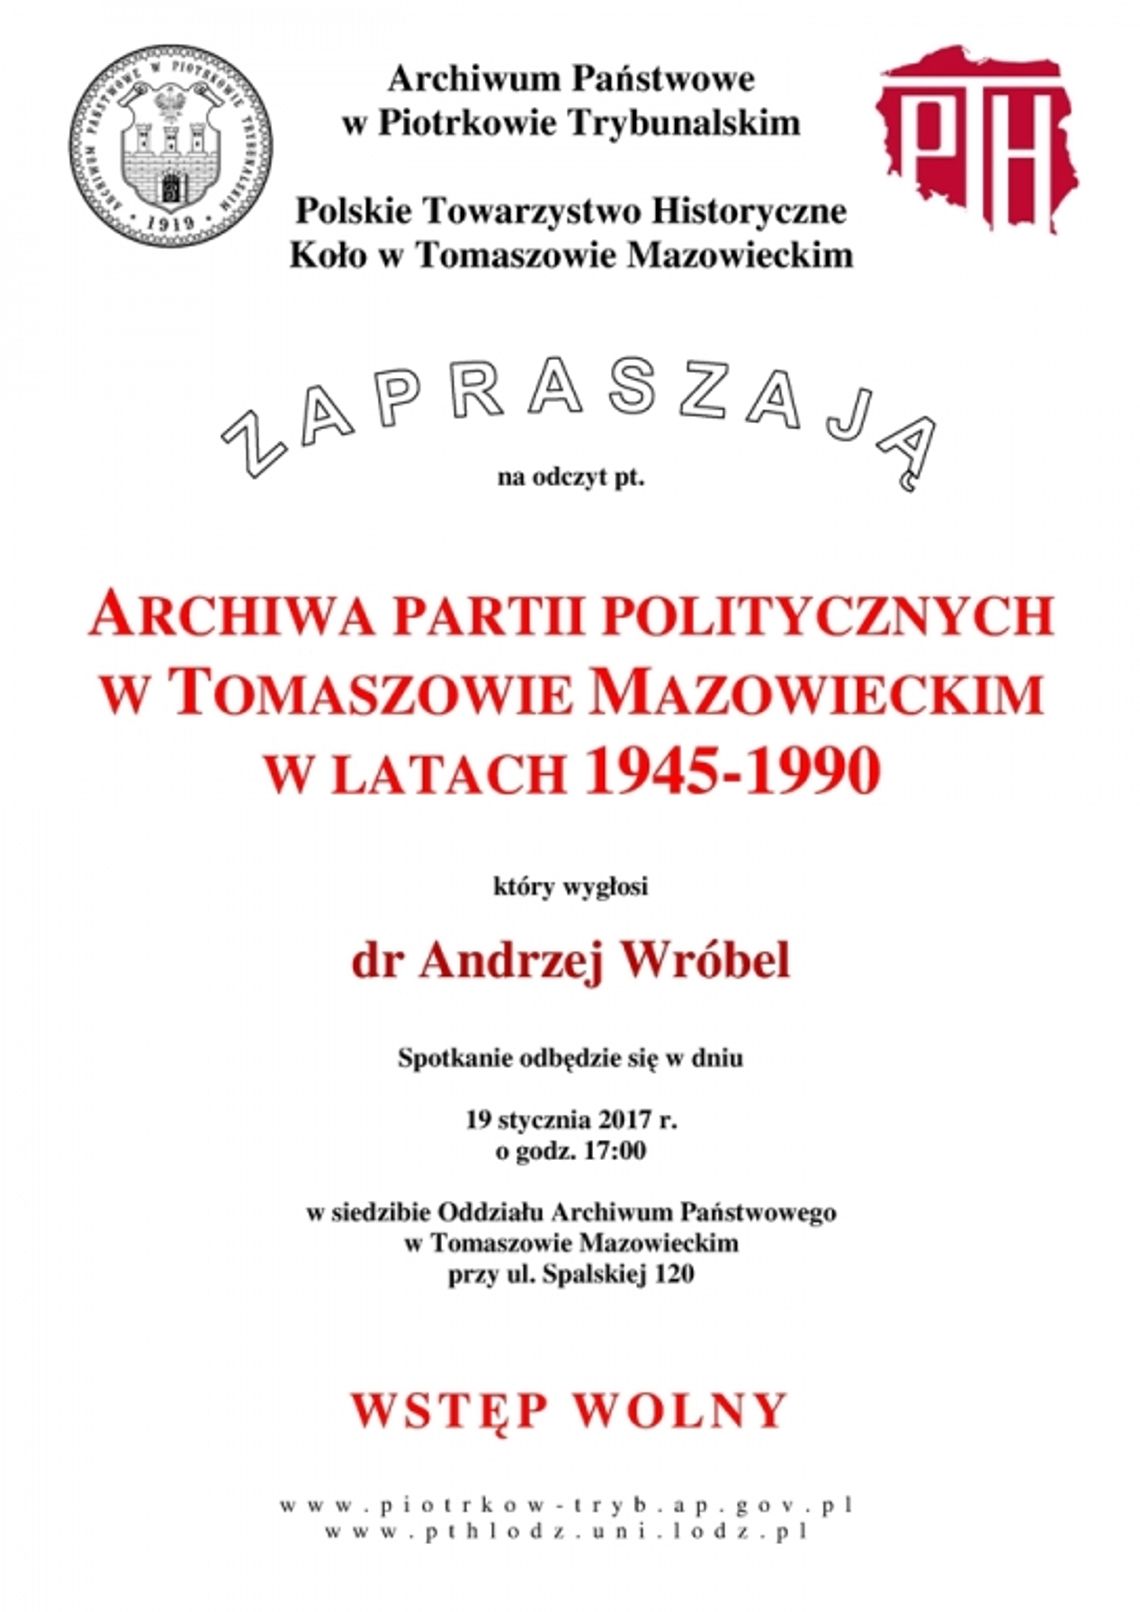 Archiwa partii politycznych w Tomaszowie Mazowieckim w latach 1945-1990